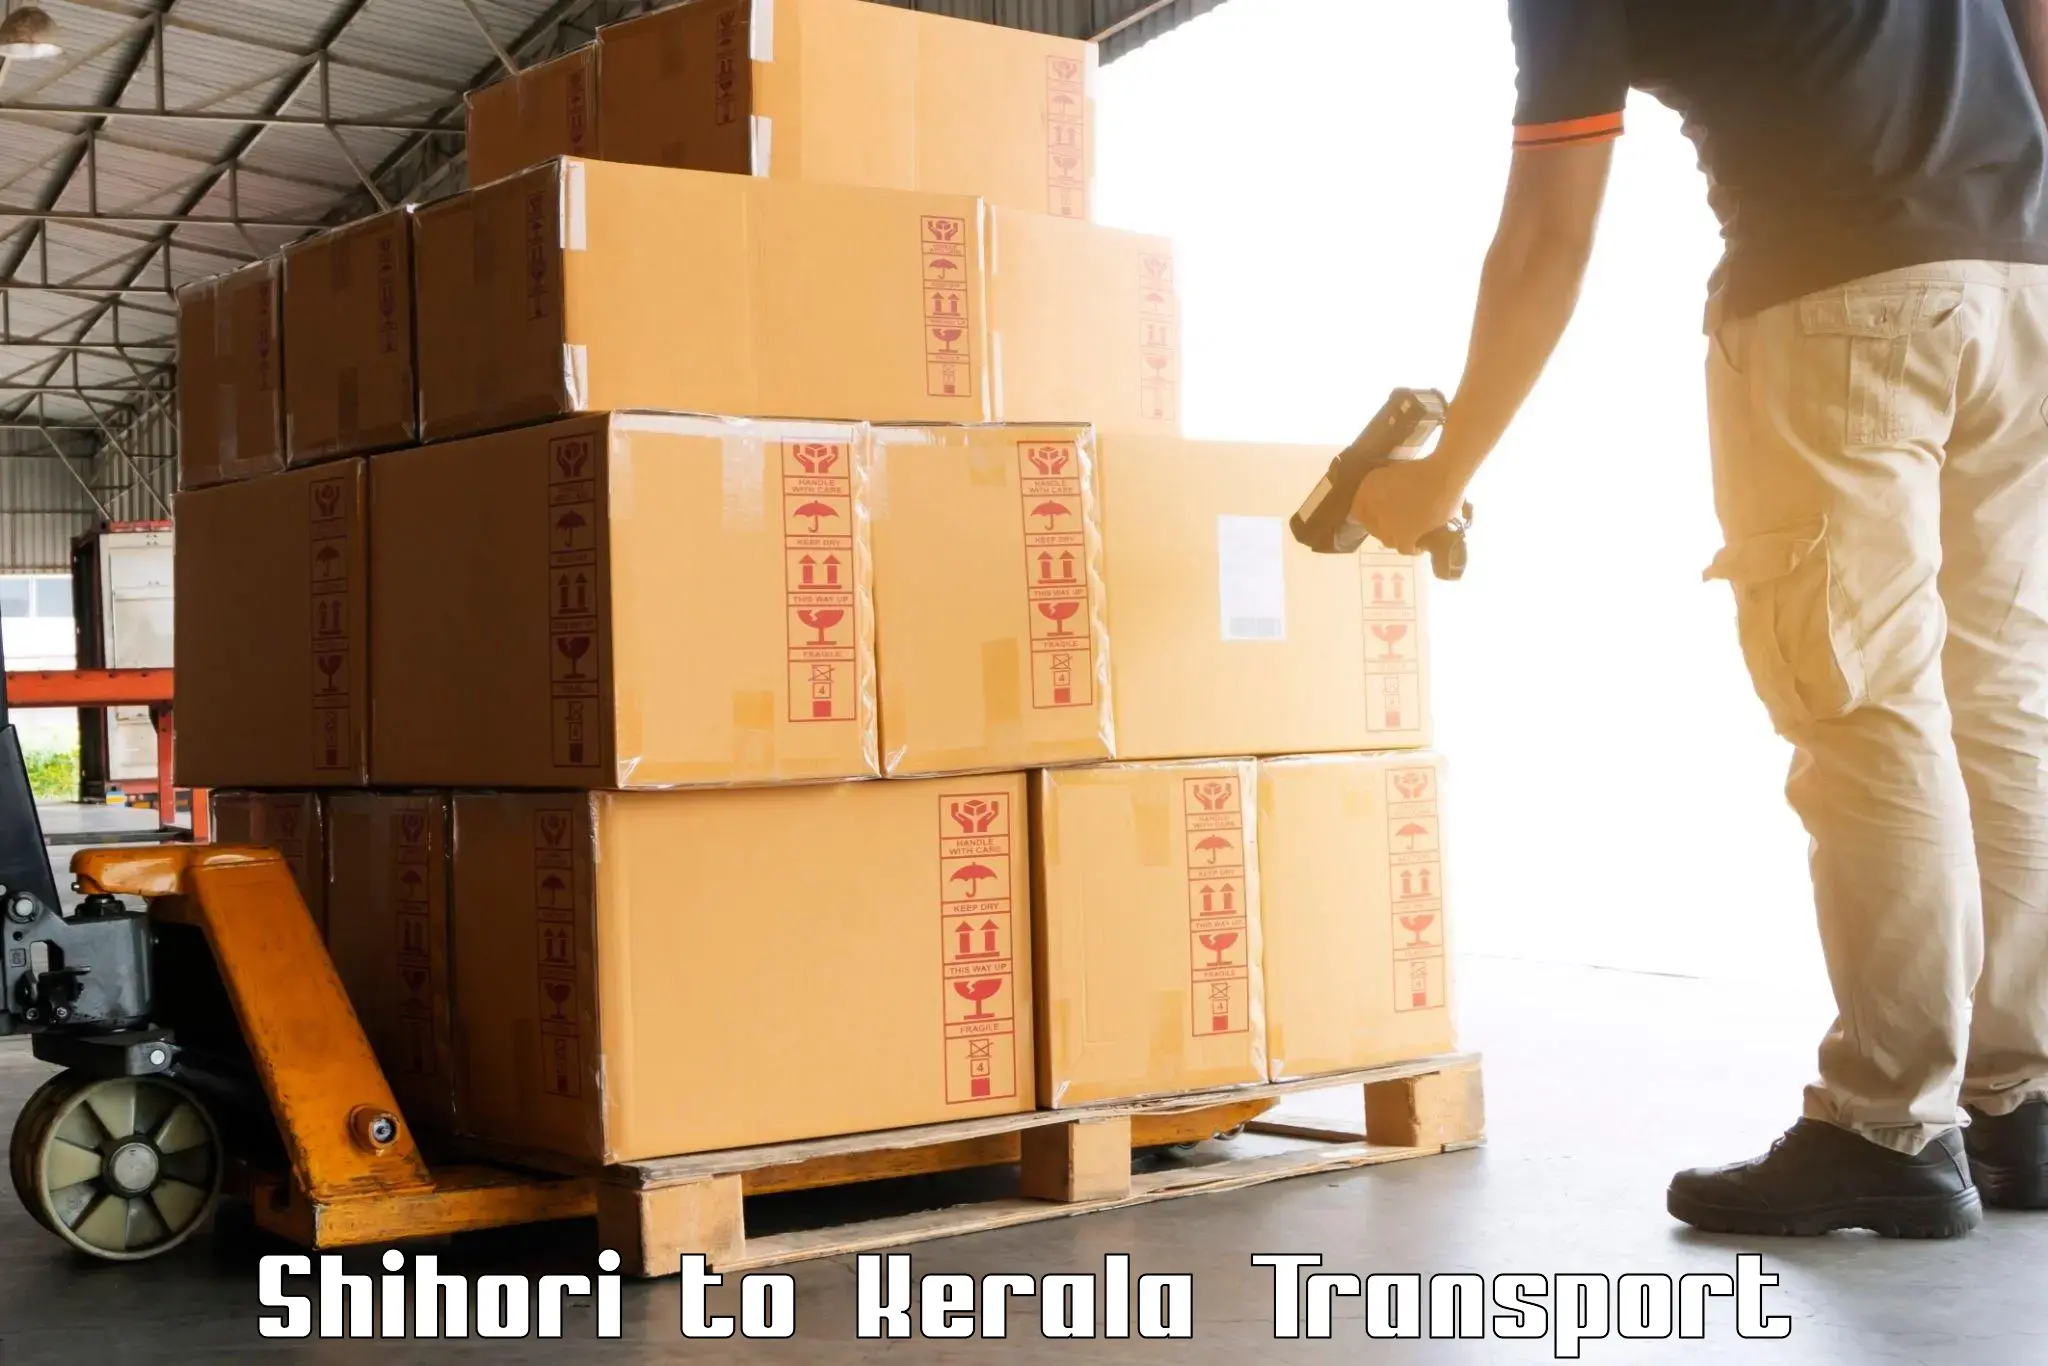 Land transport services in Shihori to Narikkuni